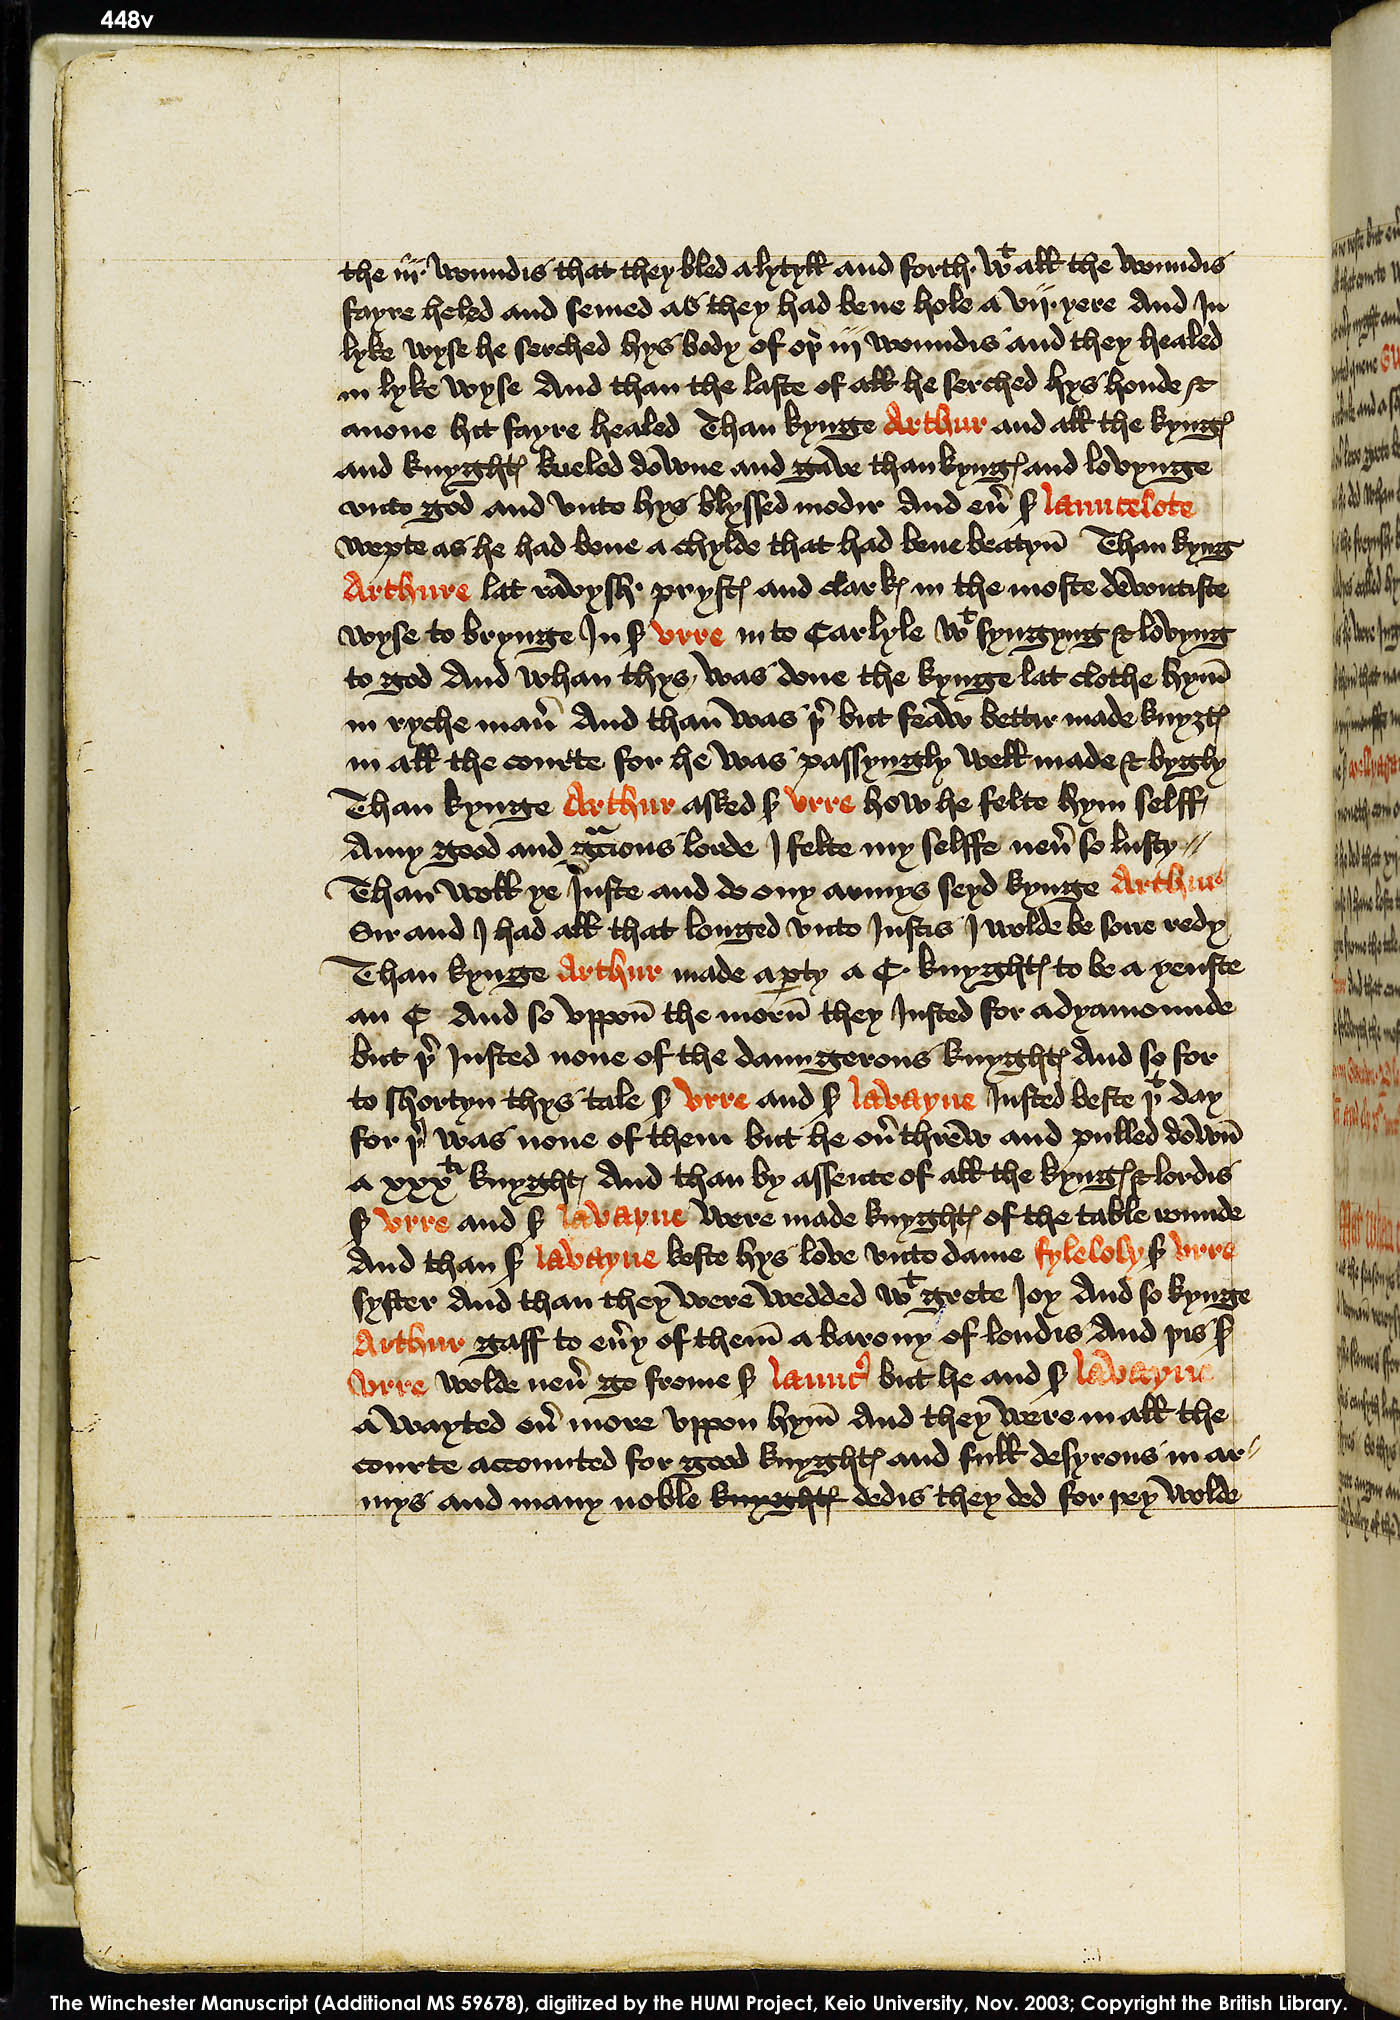 Folio 448v